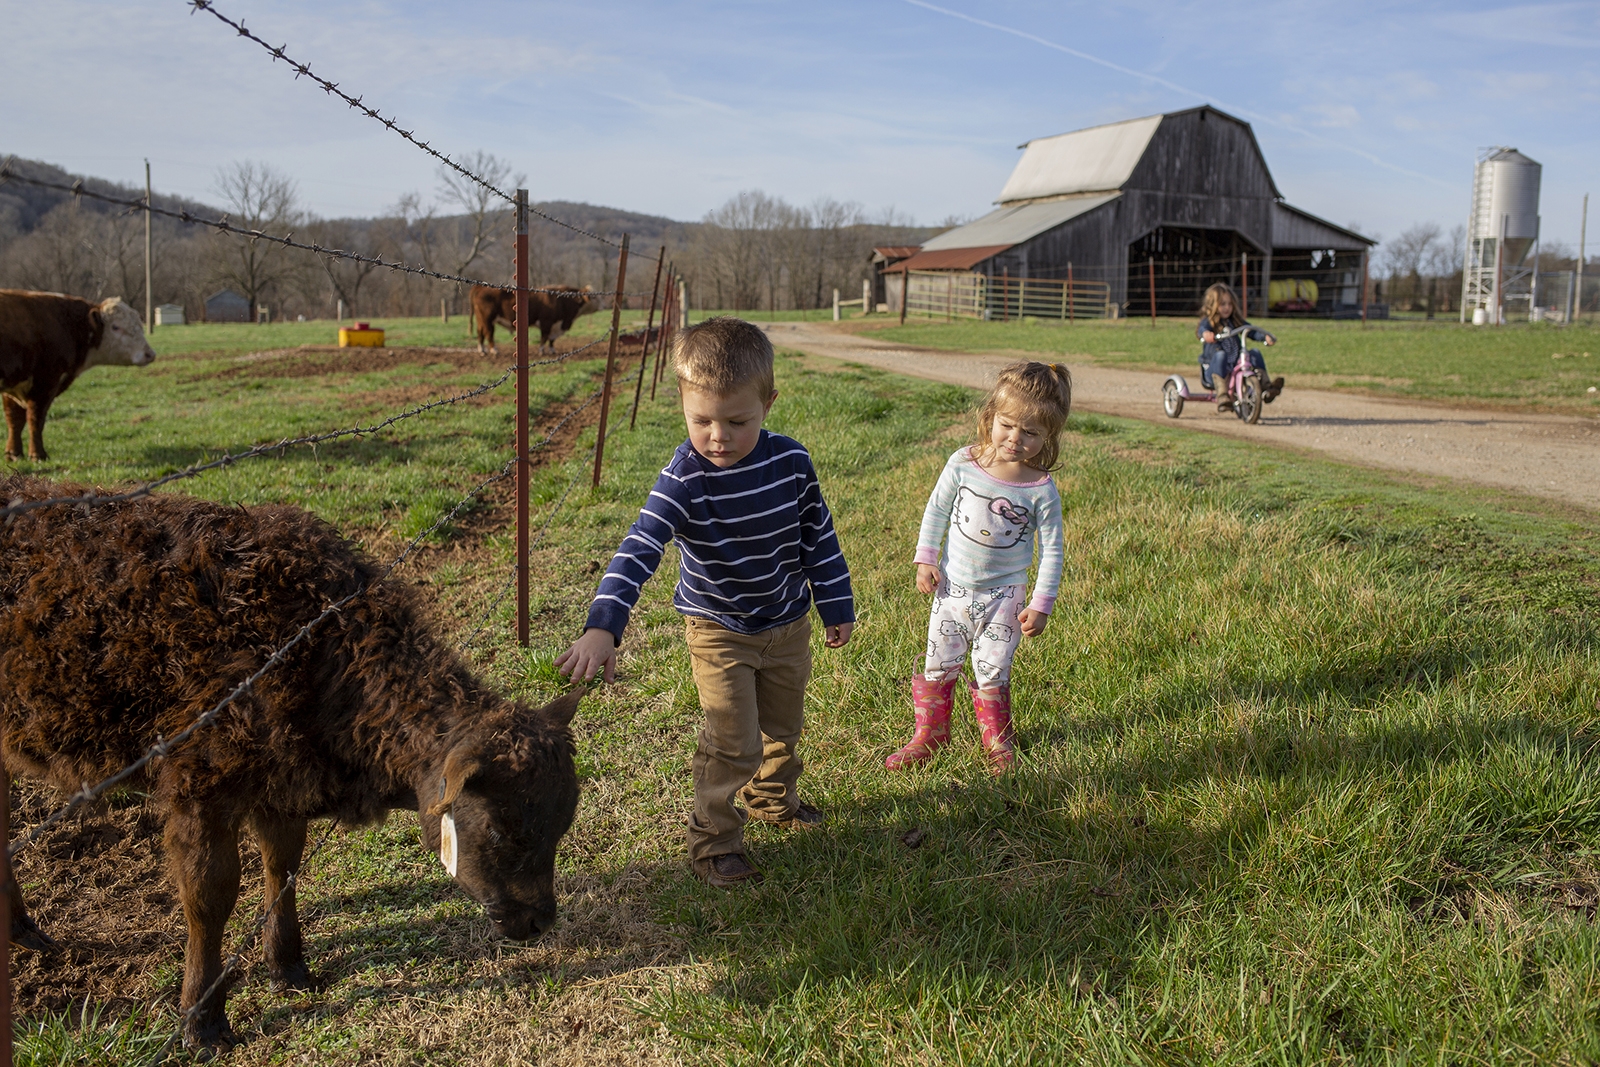 Children pet a calf on their farm in rural Arkansas.